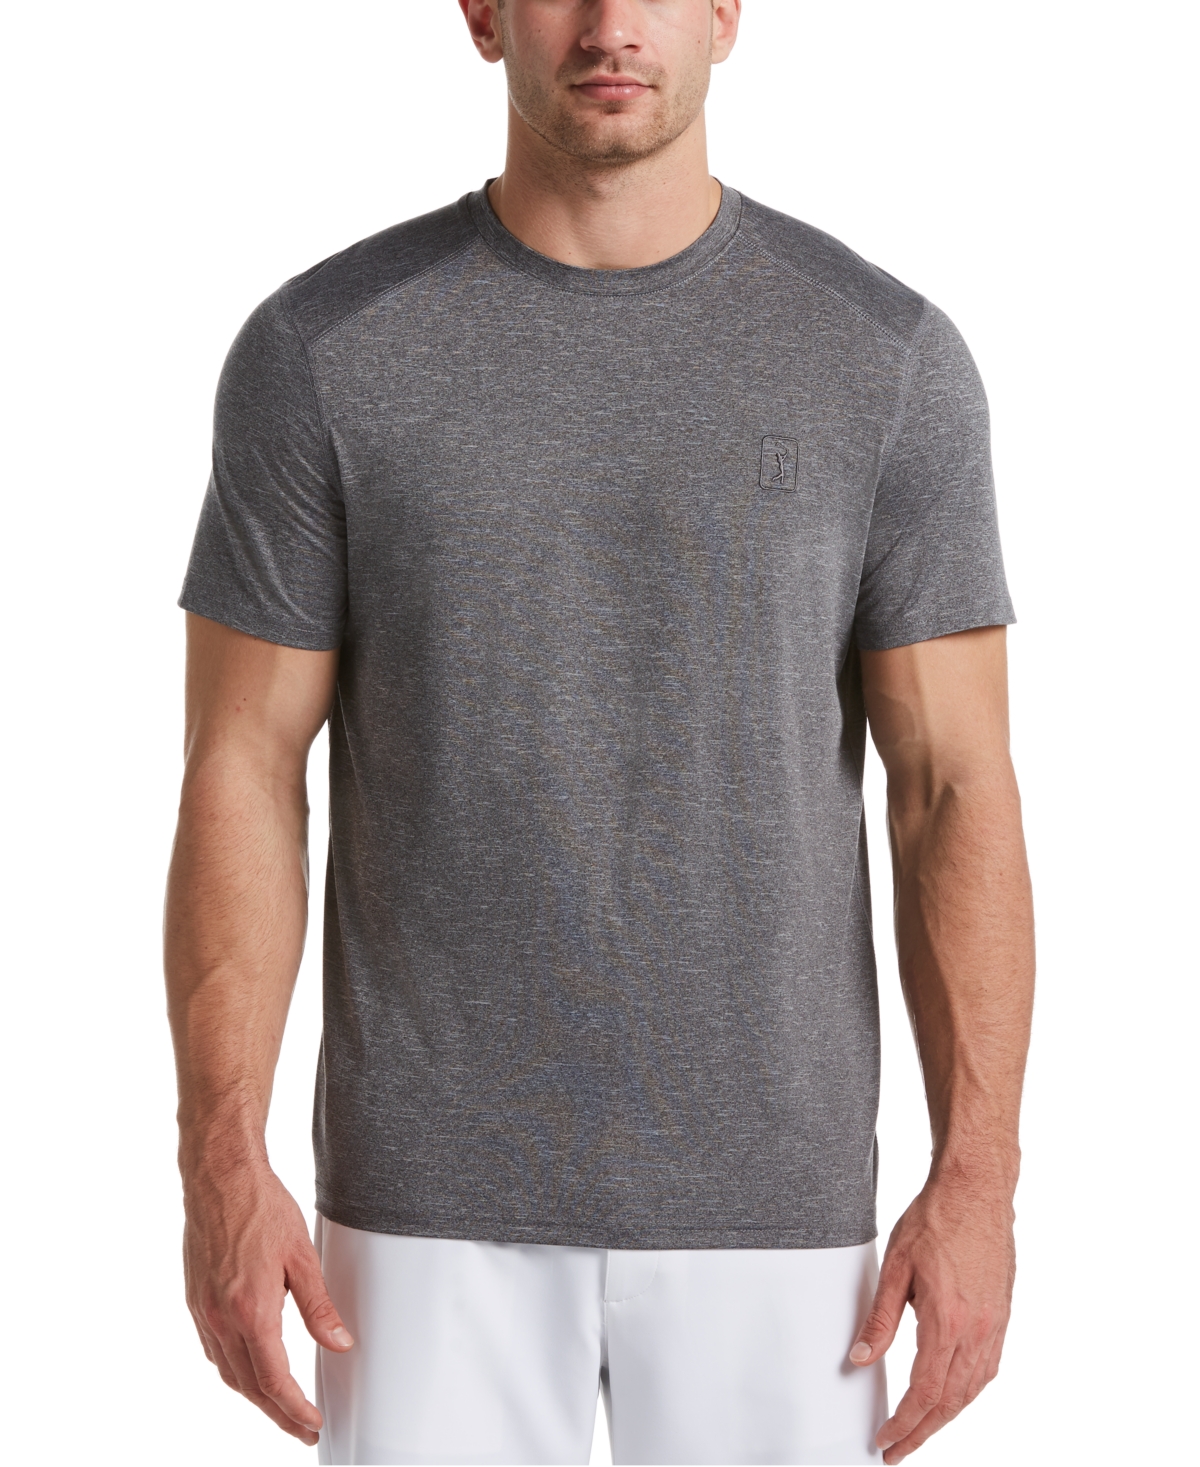 Men's Heathered T-Shirt - Bright White